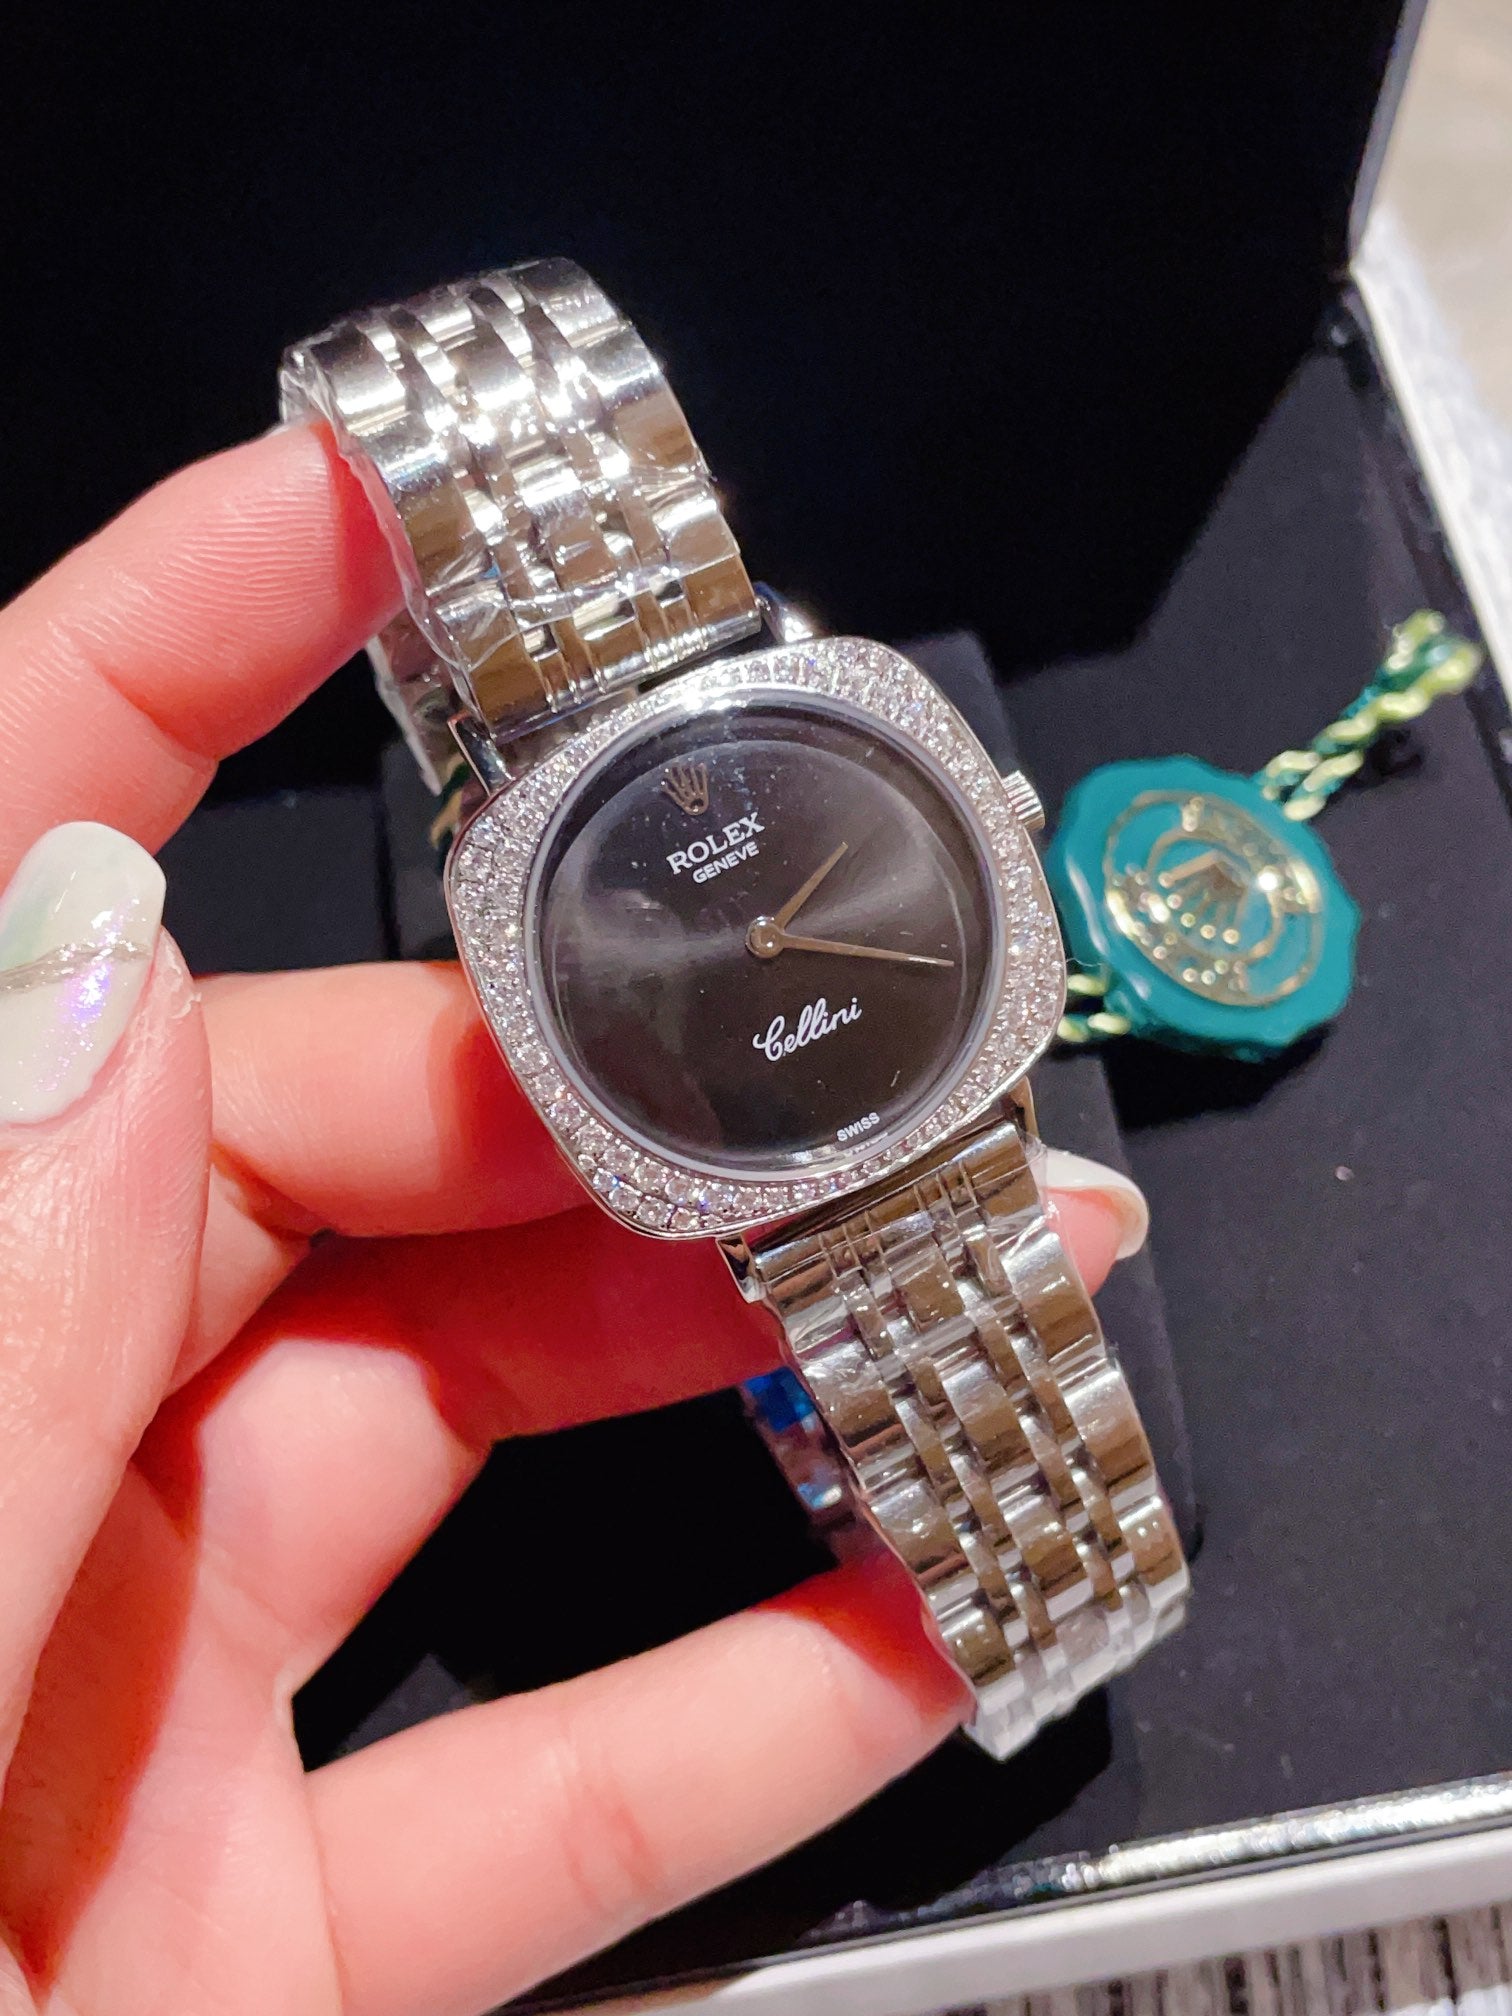 Rolex watches